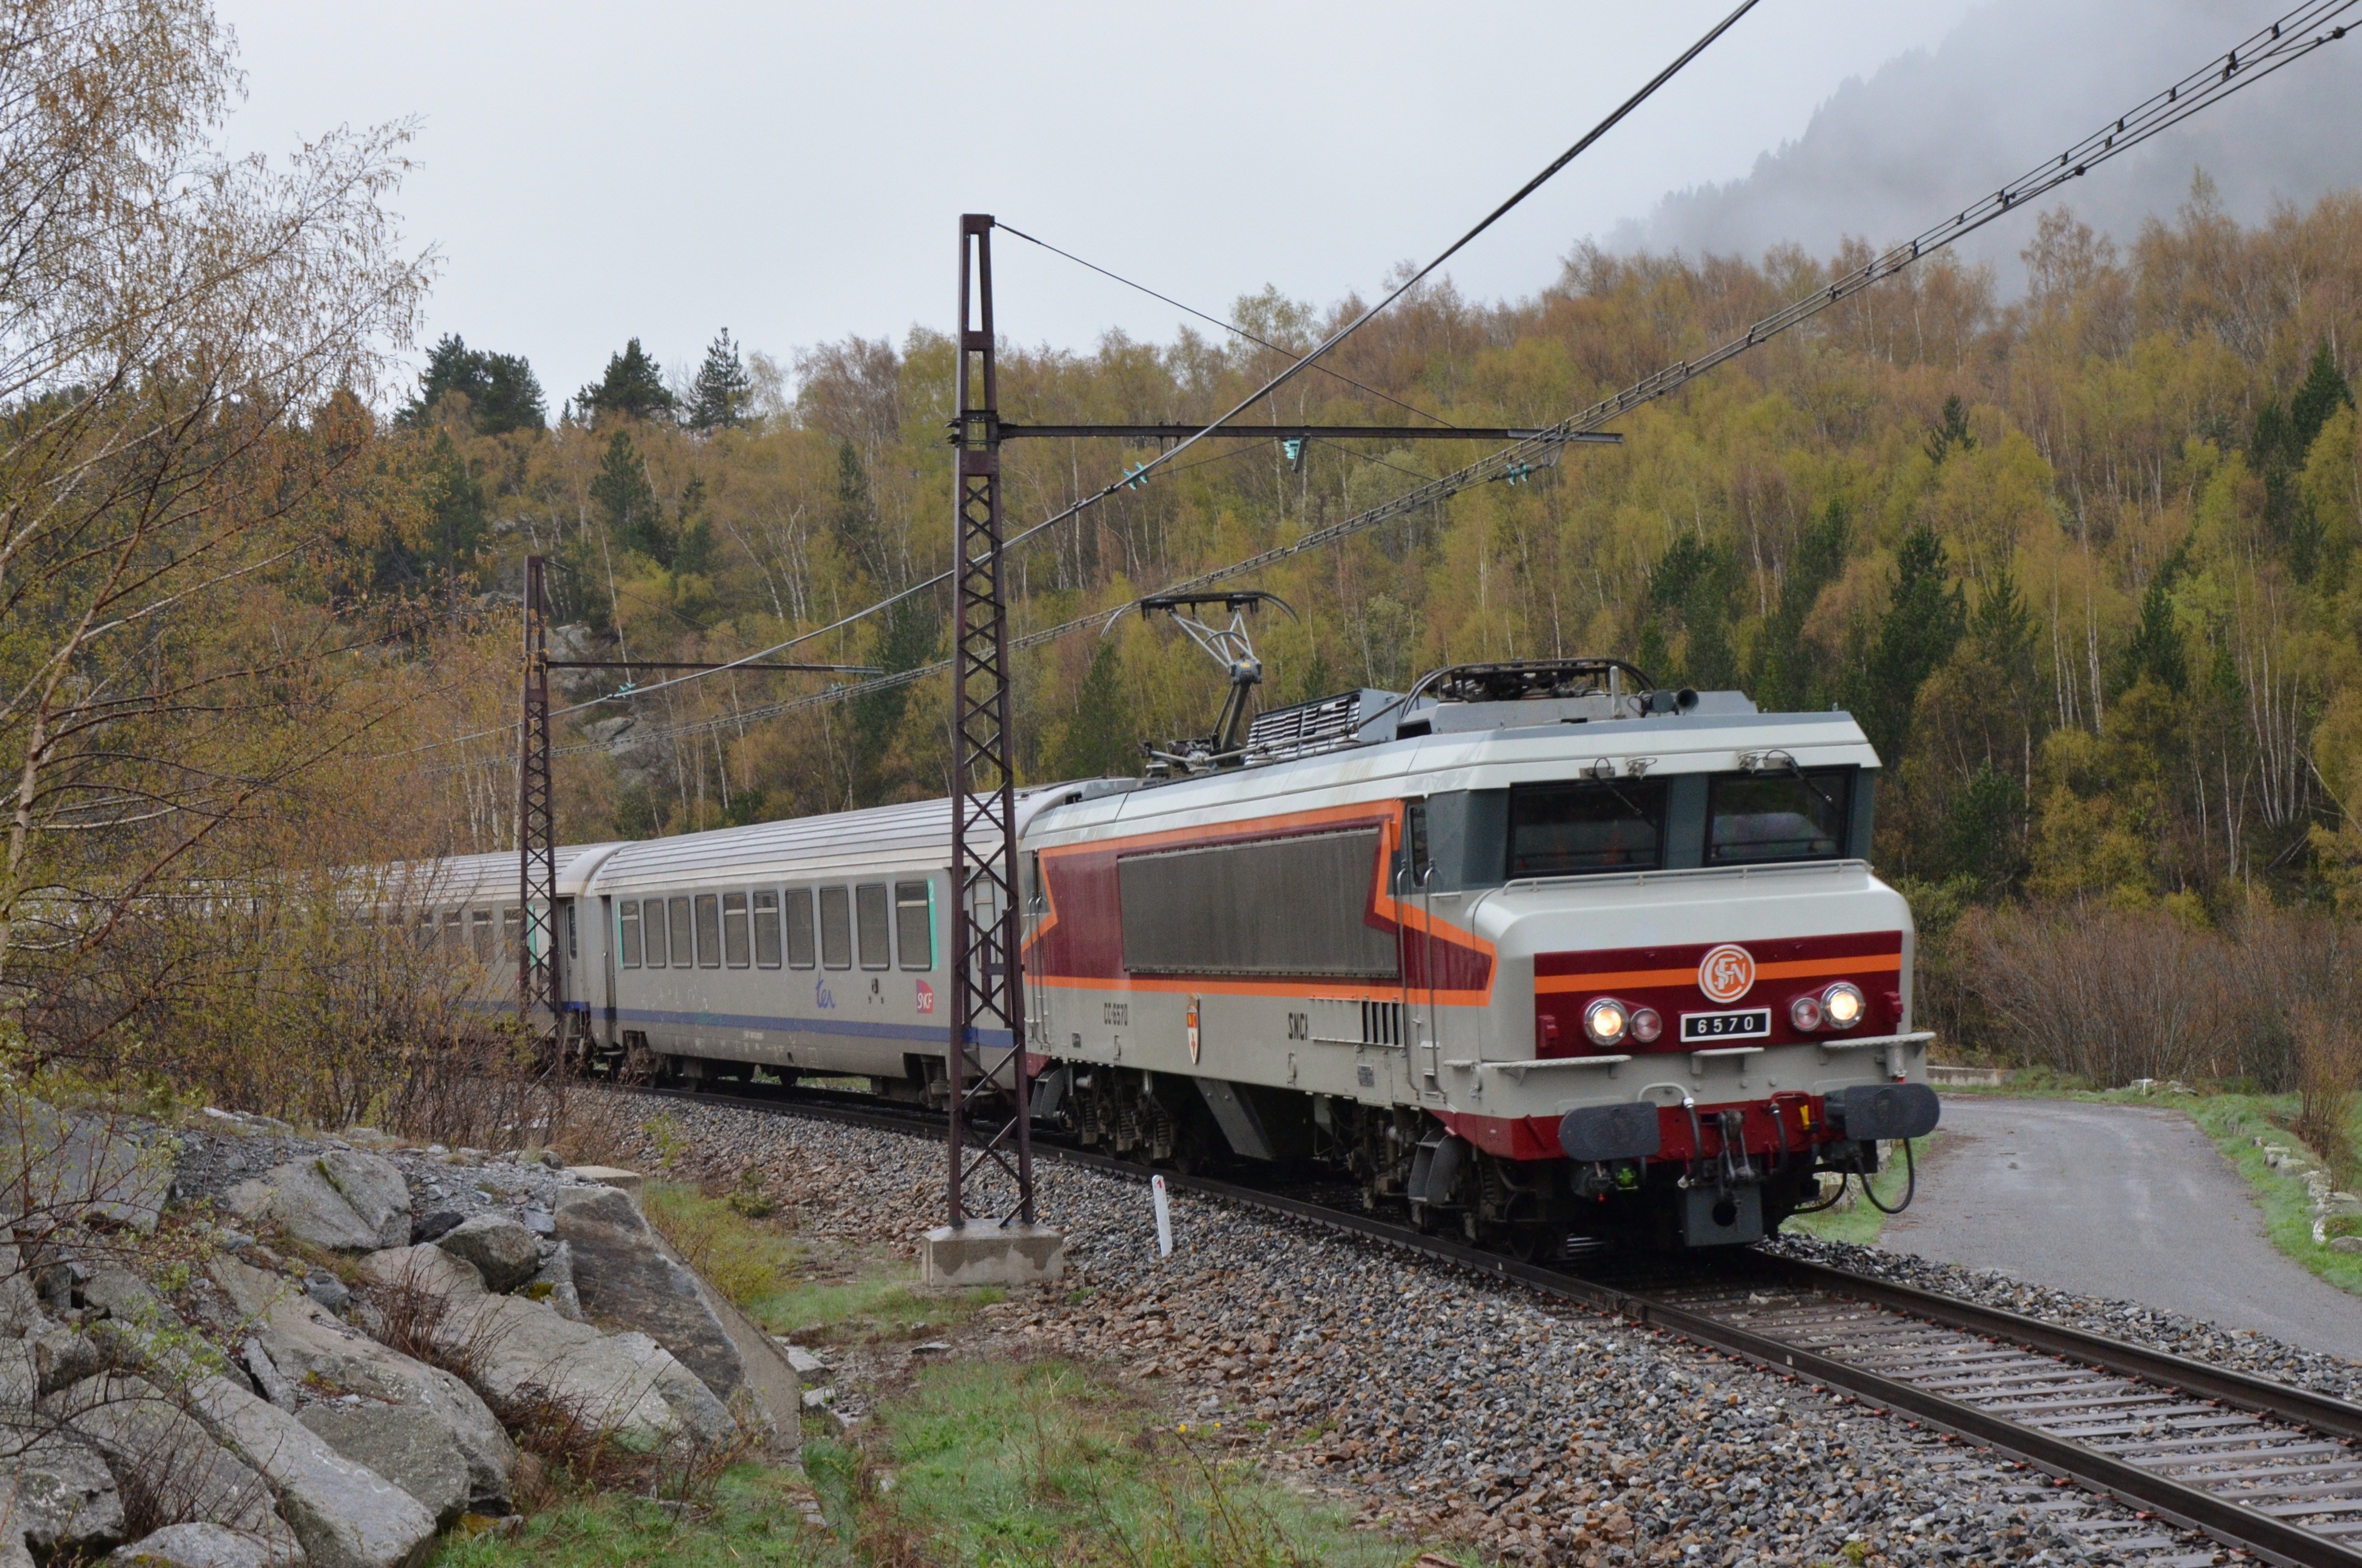 2013 - APCC 6570 - Train Spécial : La CC 6570 entre Avignon ↔ Toulouse ↔ Latour de Carol du 18 au 20 mai 2013. - Page 7 13060403494710035811260914